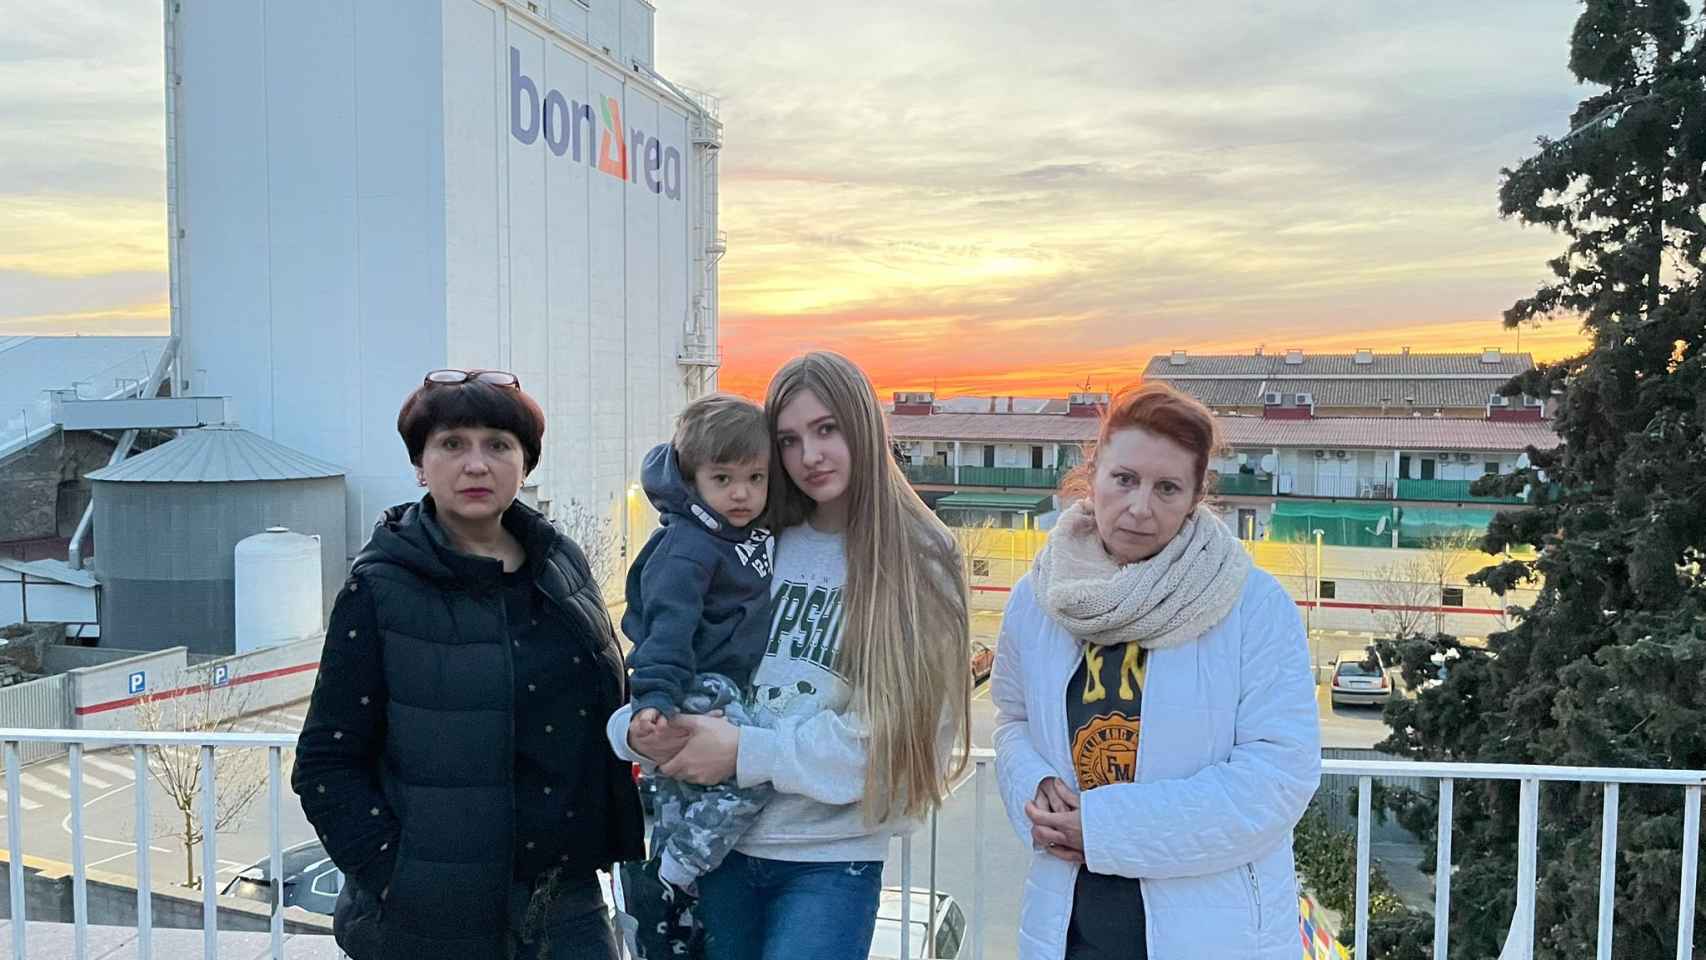 De izquierda a derecha, las refugiadas ucranianas en Guissona, Tamara; Vikroria y su hijo Dominik; e Irina. Al fondo, un silo de BonÀrea, la principal empresa agrícola de la región que emplea a la mayoría de la comunidad ucraniana en el pueblo.